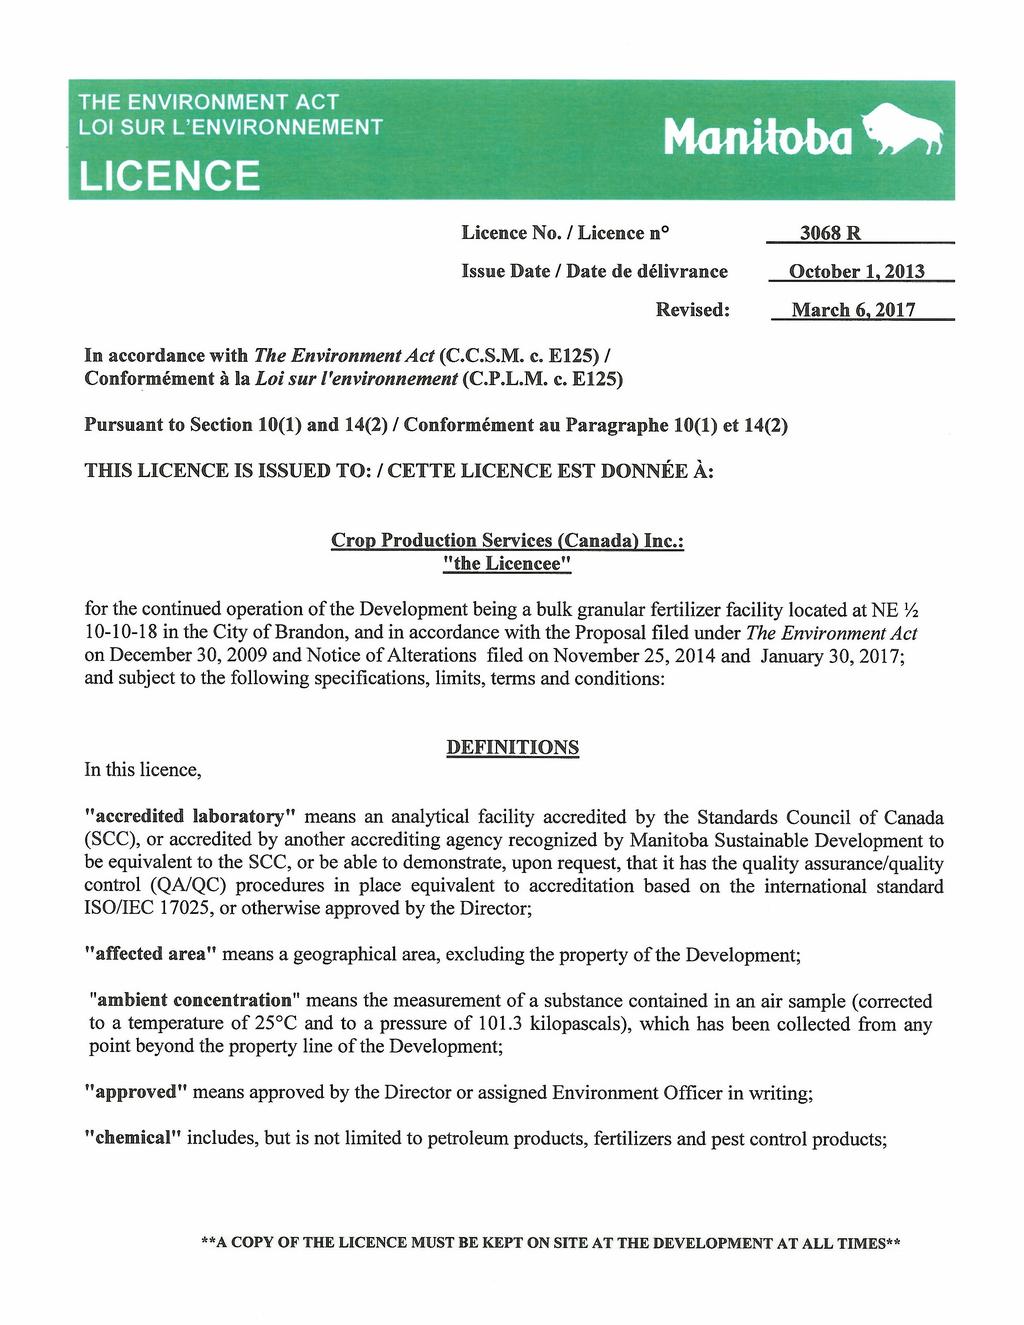 In accordance with The Environment Act (C.C.S.M. c. E12S) / Conformement a la Loi sur ['environnement (C.P.L.M. c. E12S) Licence No.